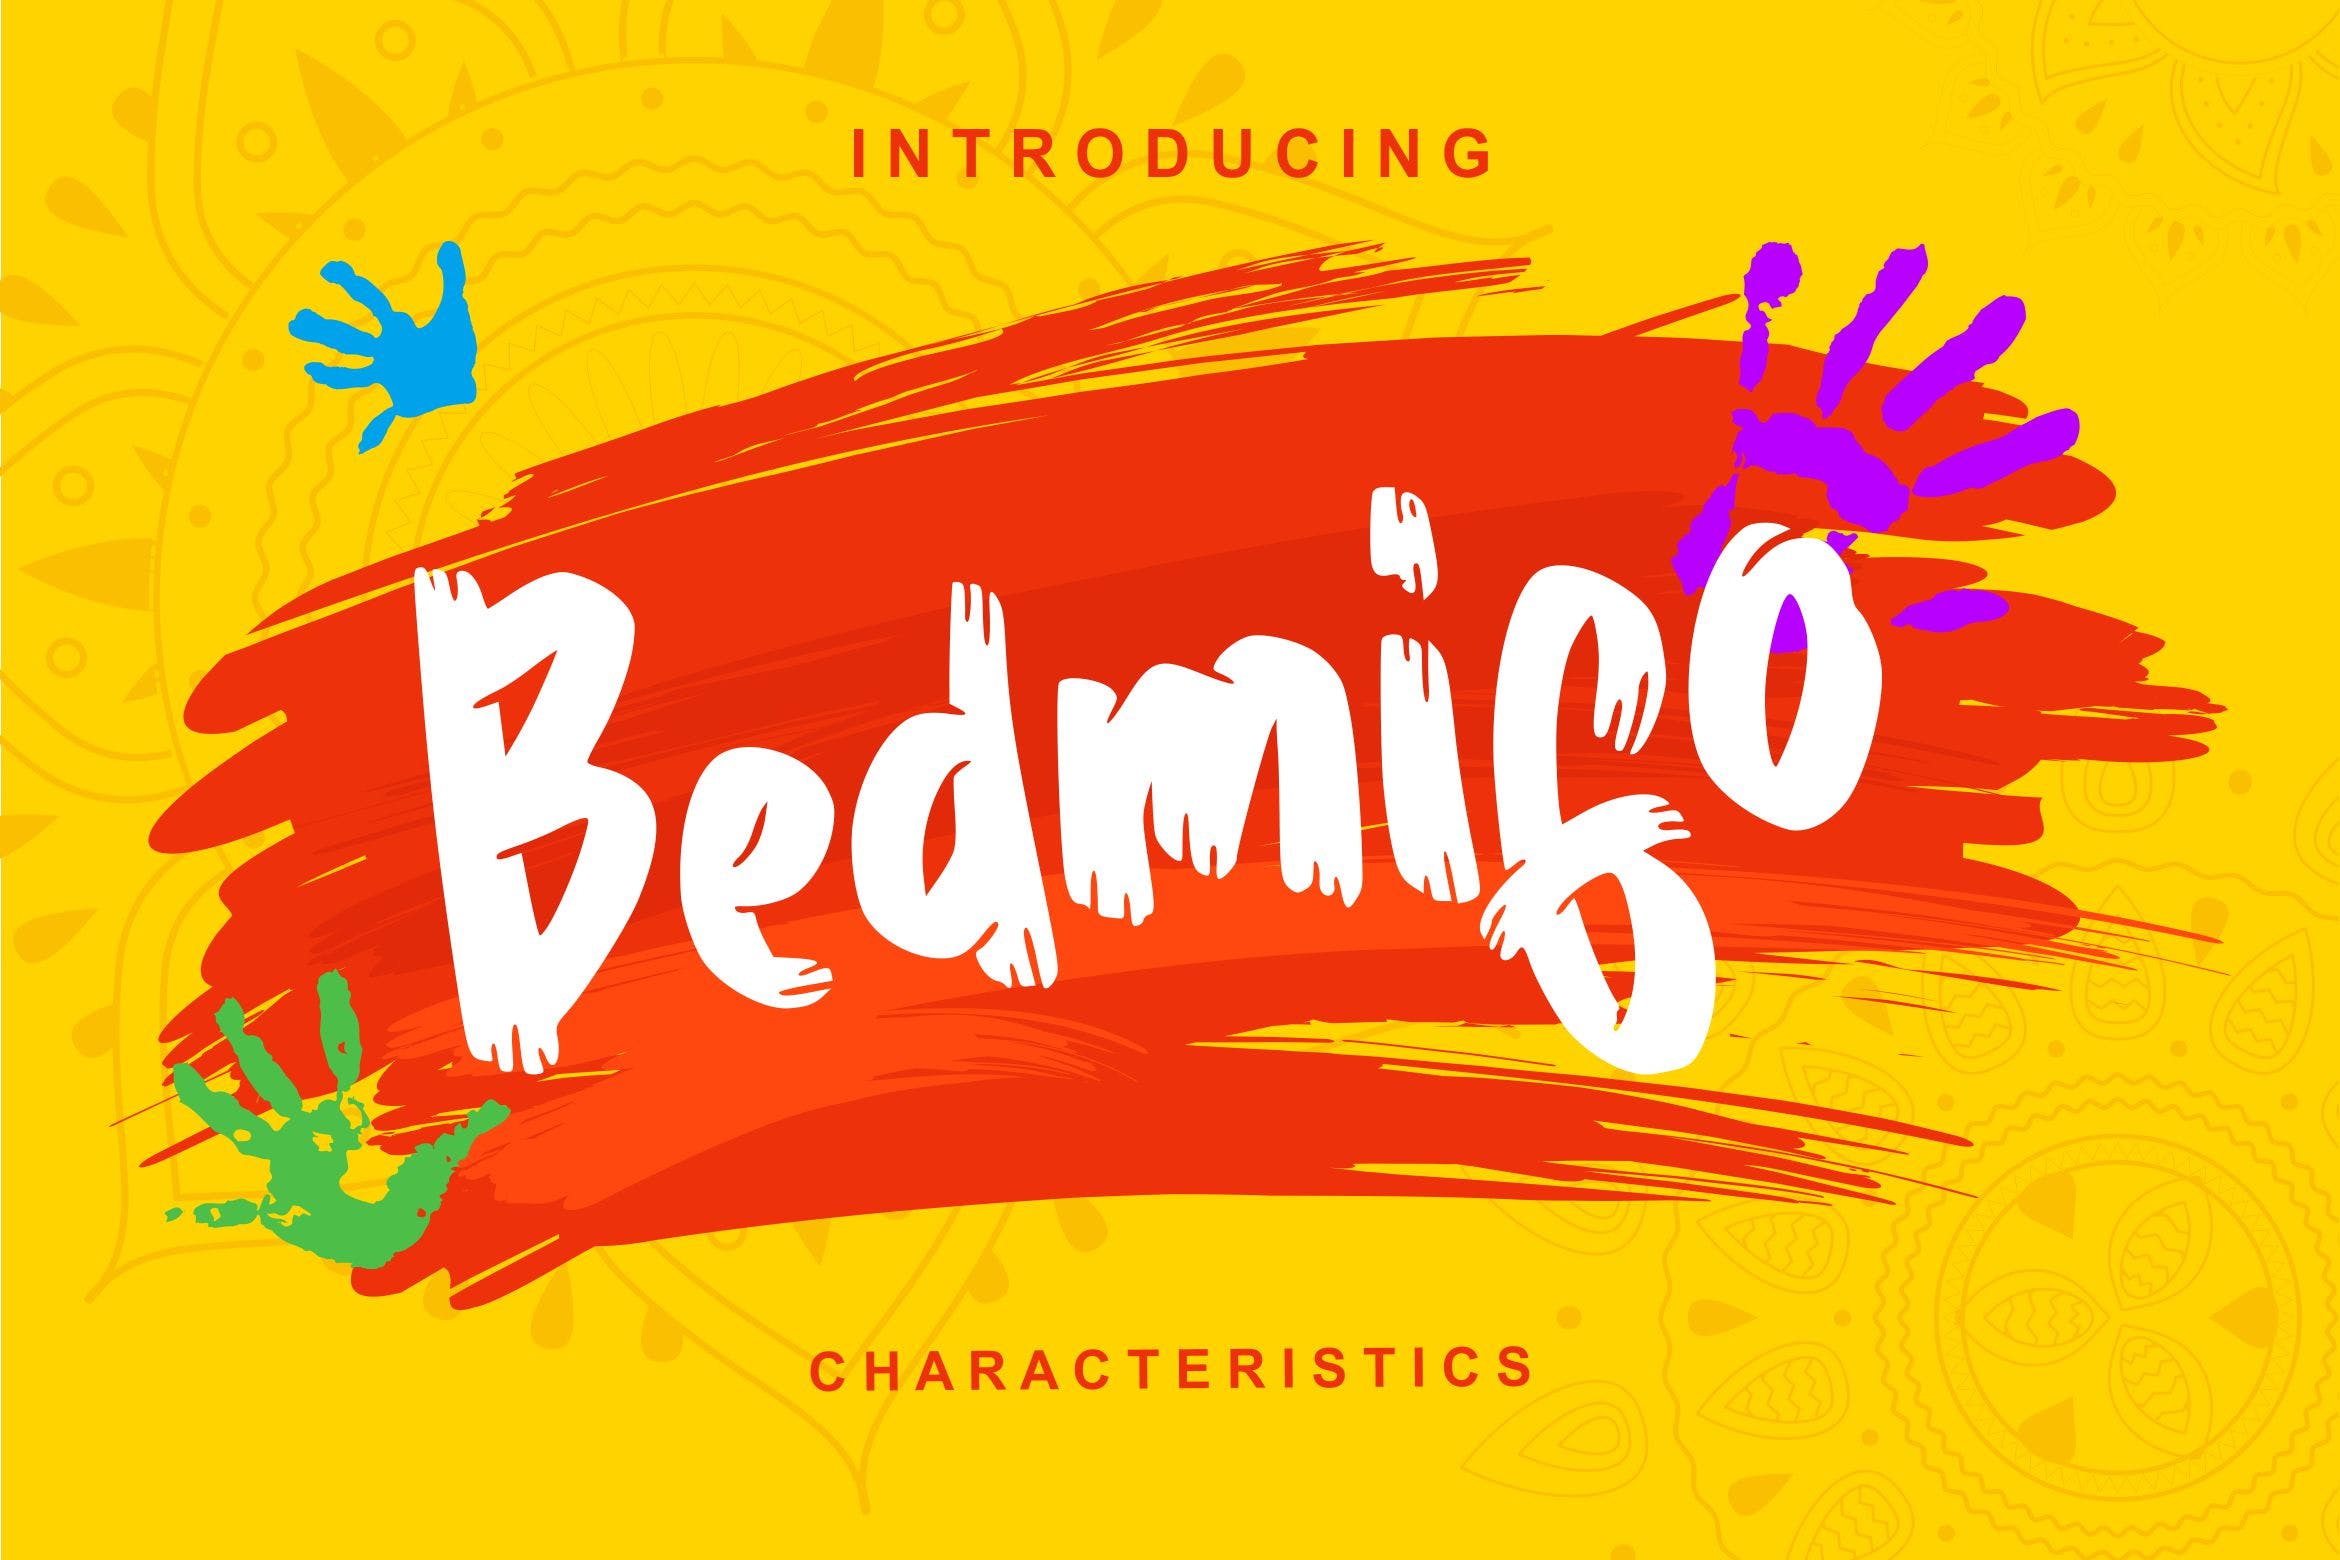 个性独特的英文书法字体 Bedmifo | Characteristics Script Font插图